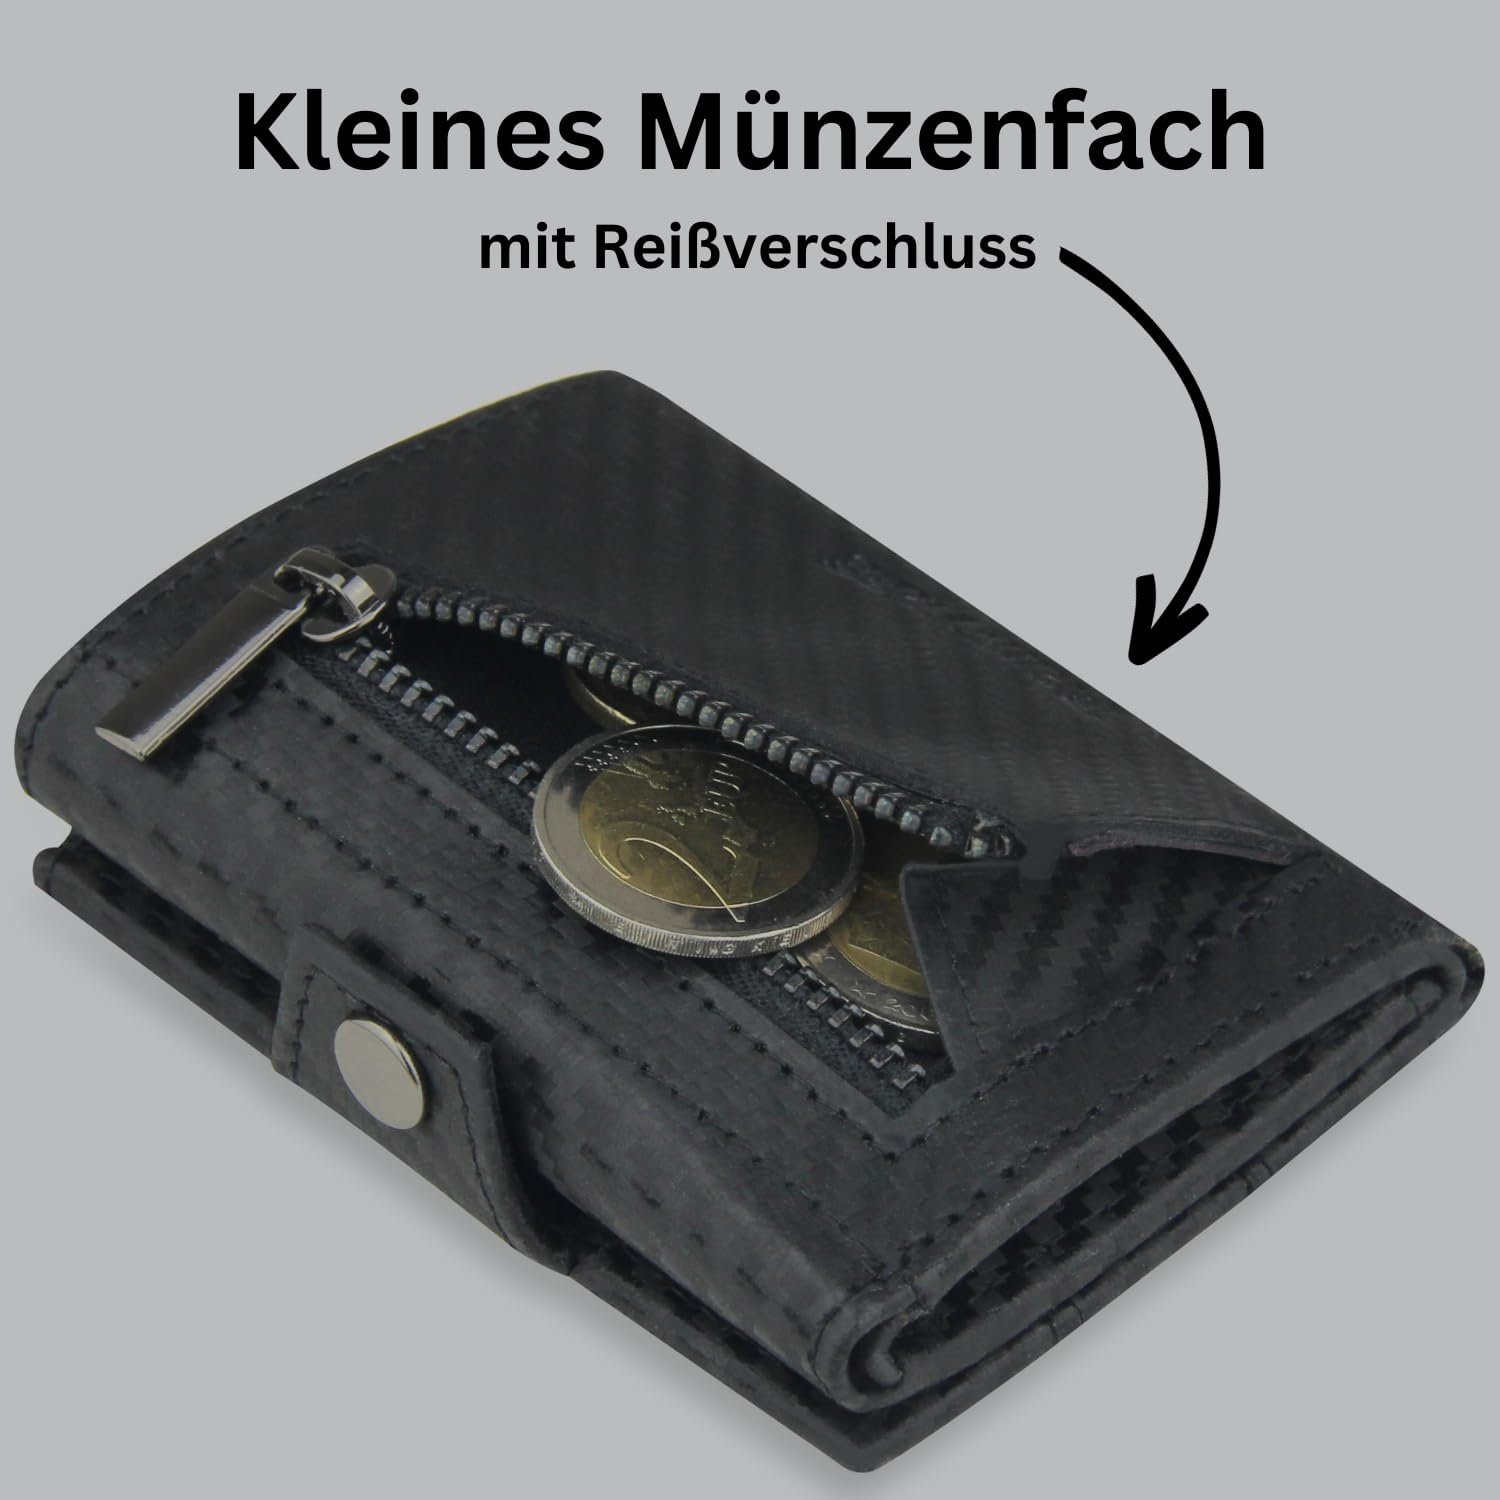 Mini, - Mini mit RFID-Schutz Geldbeutel Portemonnaie Slim Wallet - Carbon Leder Geldbörse mit echtem Kartenetui Echtleder - Frentree Geldbörse Klein Münzfach aus